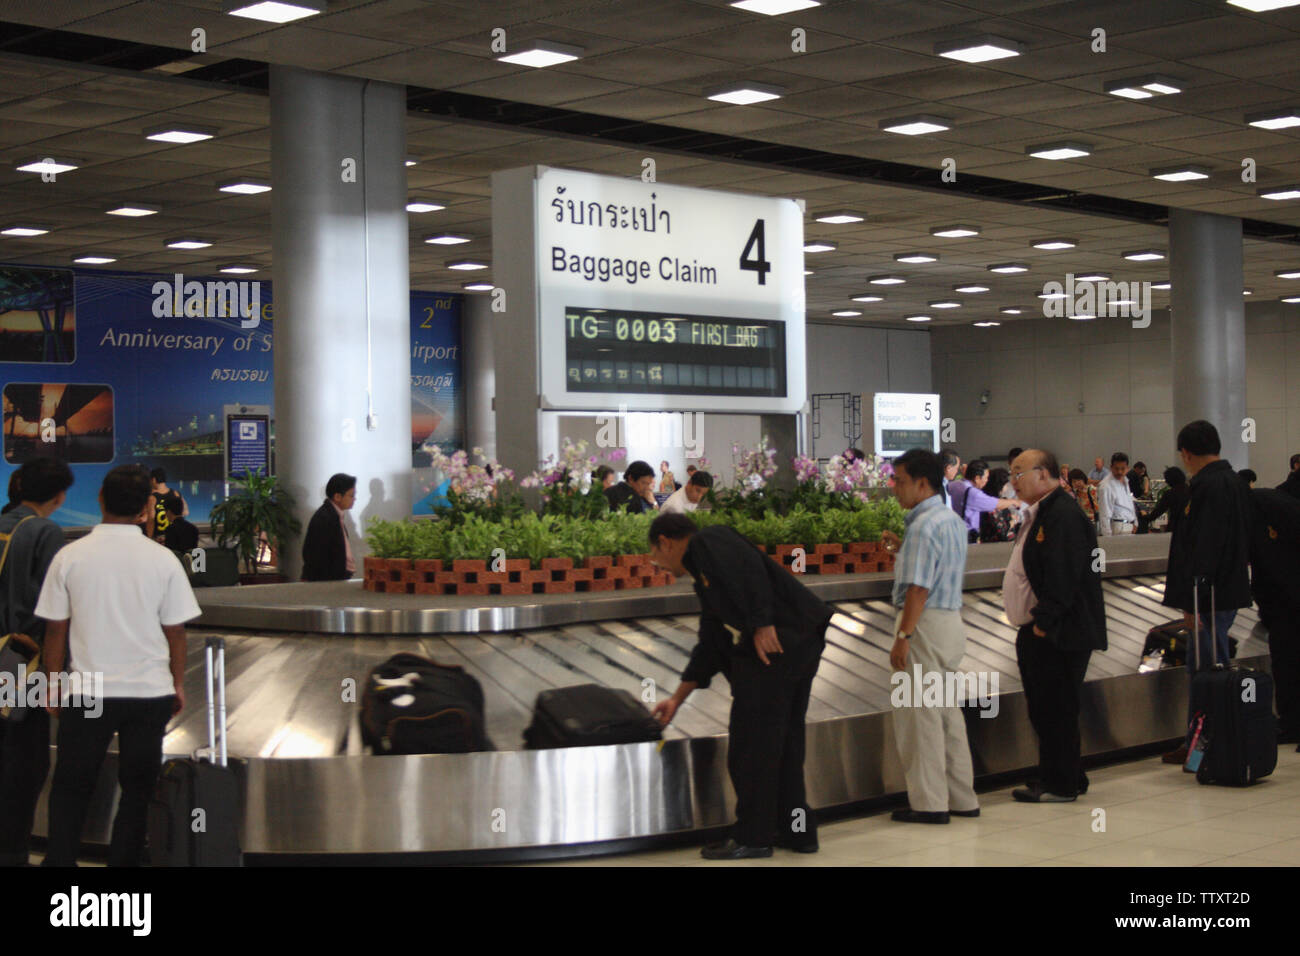 Passagers en attente de bagages dans un carrousel d'aéroport, aéroport de Suvarnabhumi, Bangkok, Thaïlande Banque D'Images